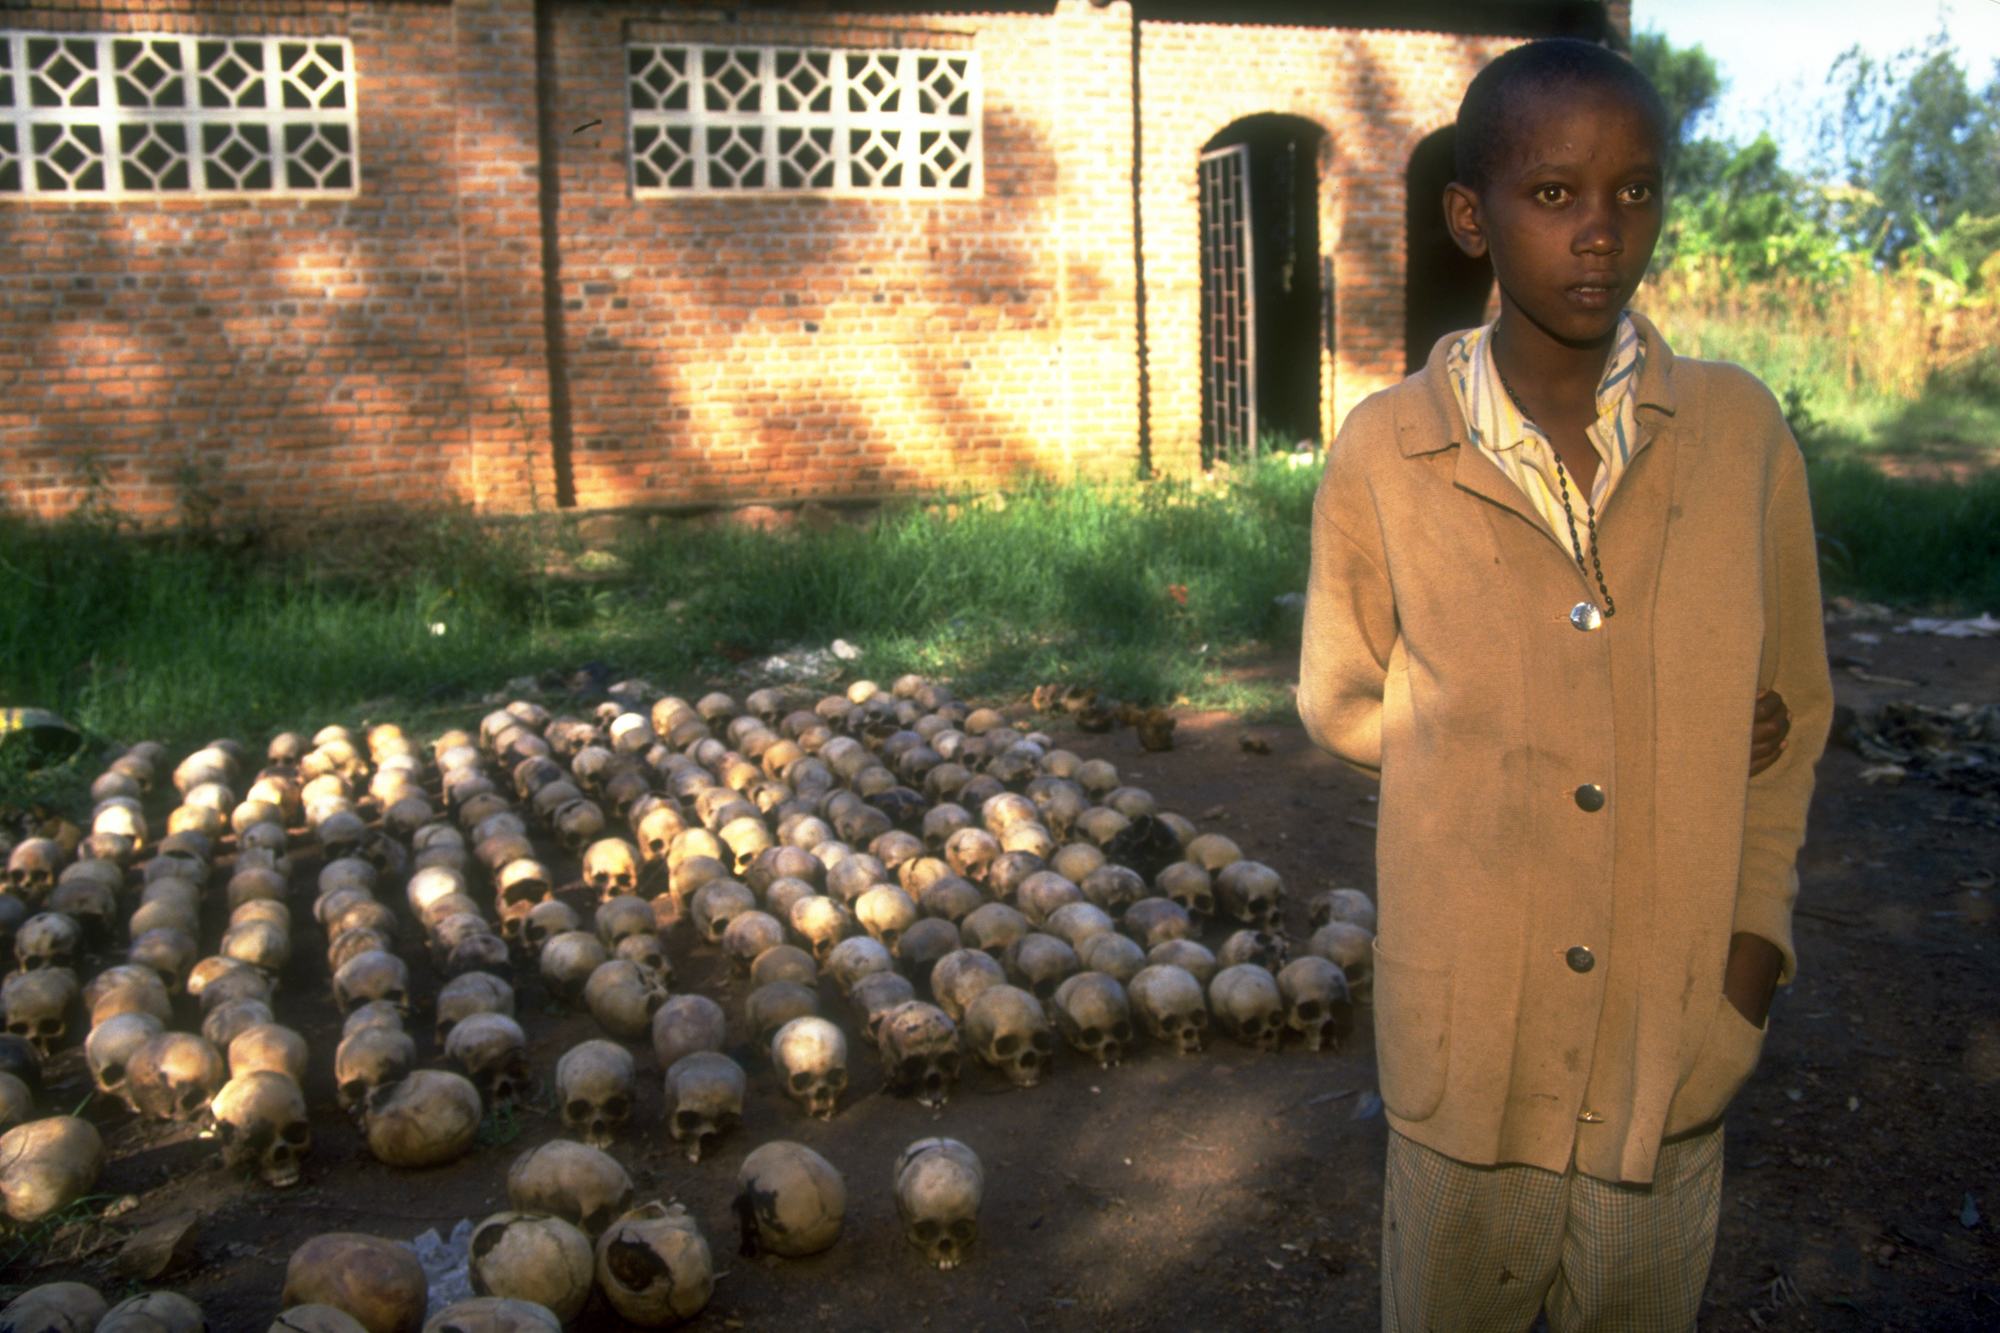 Haziran 1994'te fotoğraflanan Nyamata kasabasından 14 yaşındaki Ruandalı bir çocuk, iki gün boyunca cesetlerin altında saklanarak soykırımdan sağ kurtuldu.